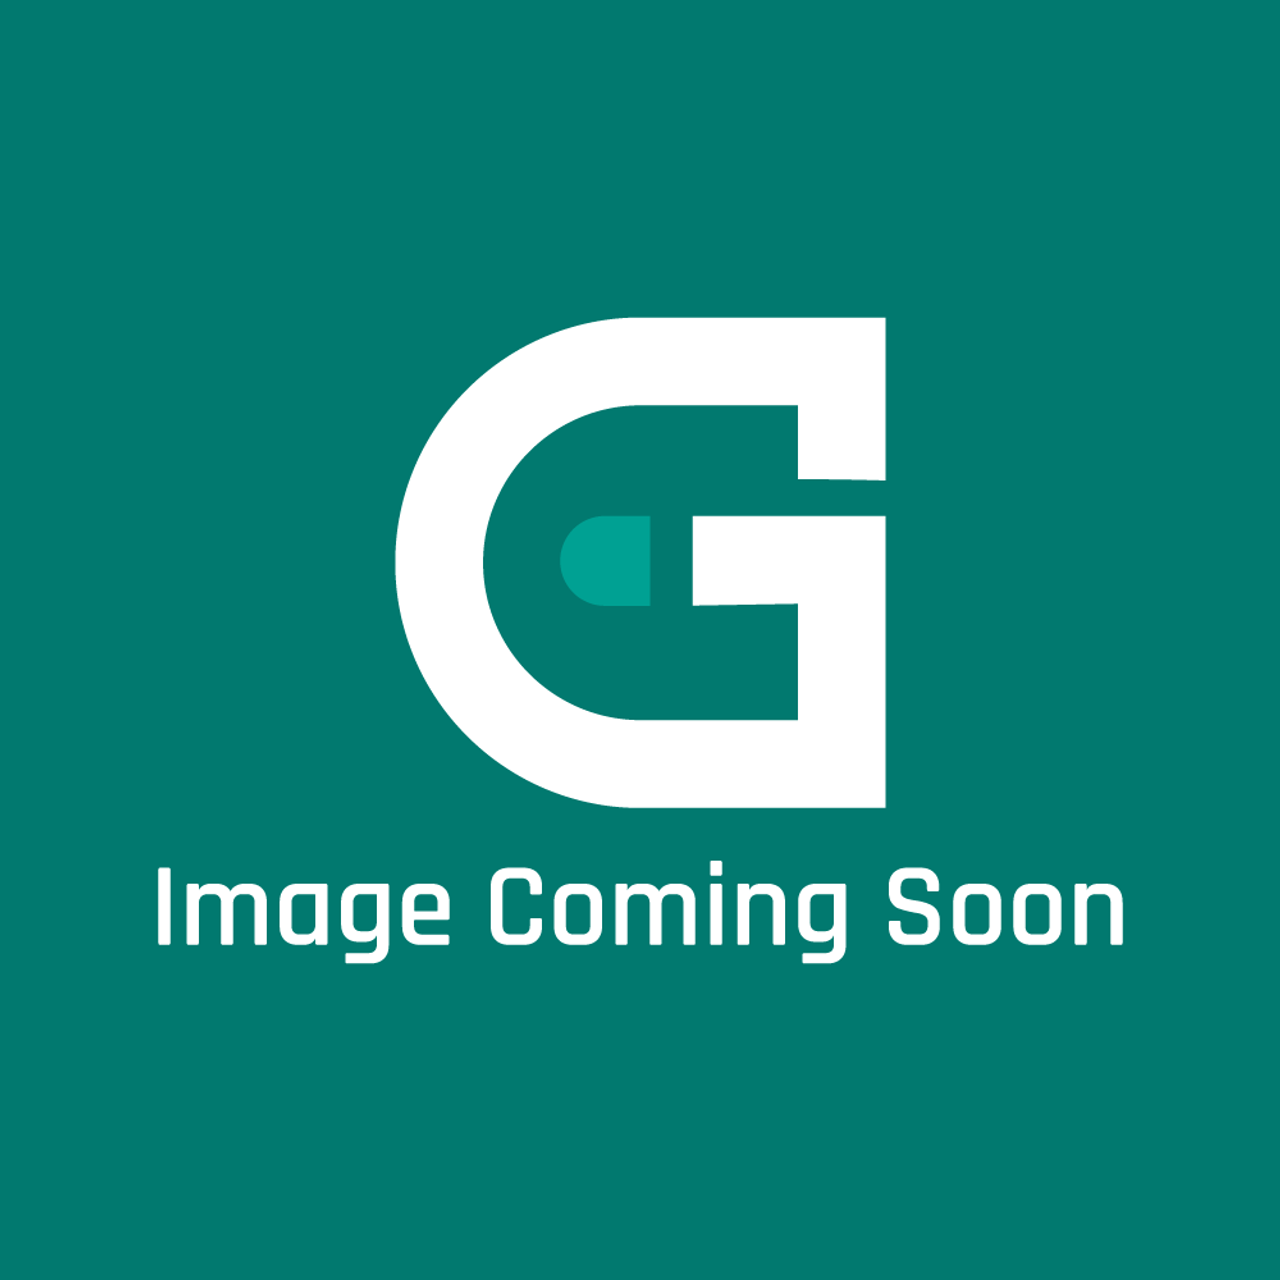 Frigidaire - Electrolux 5304530818 Hinge Bracket - Image Coming Soon!